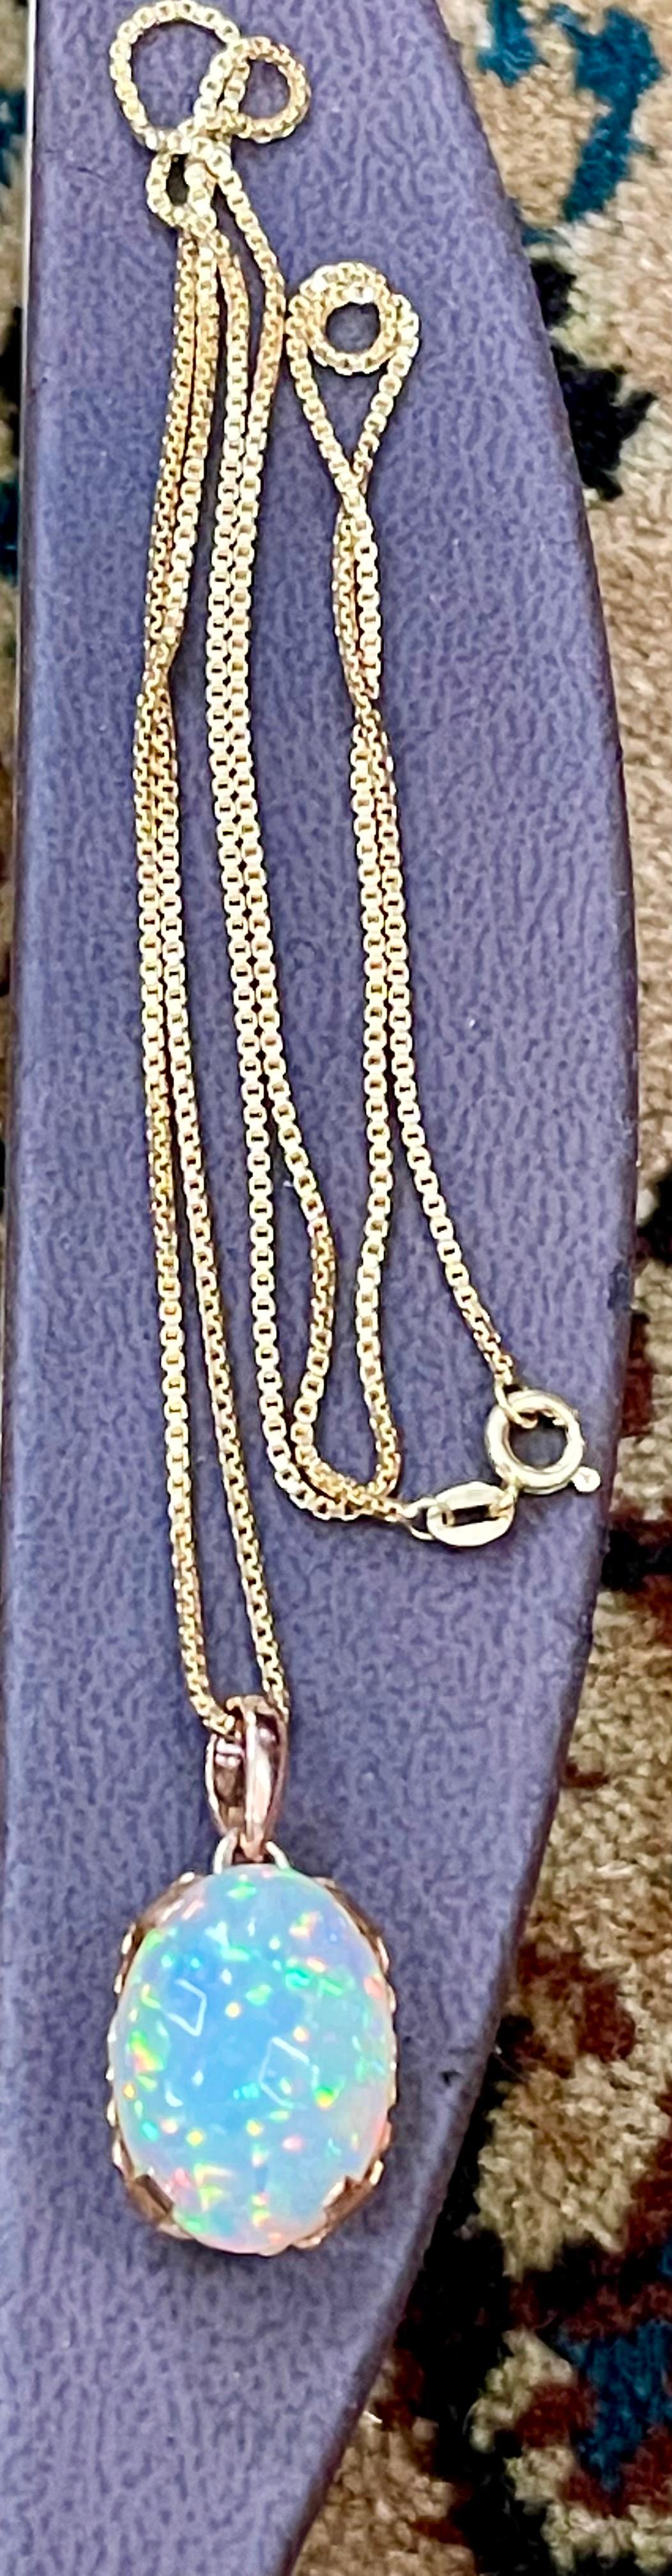 9 Carat Oval Ethiopian Opal Pendant / Necklace 18 Karat + 18 Kt Gold Chain 8